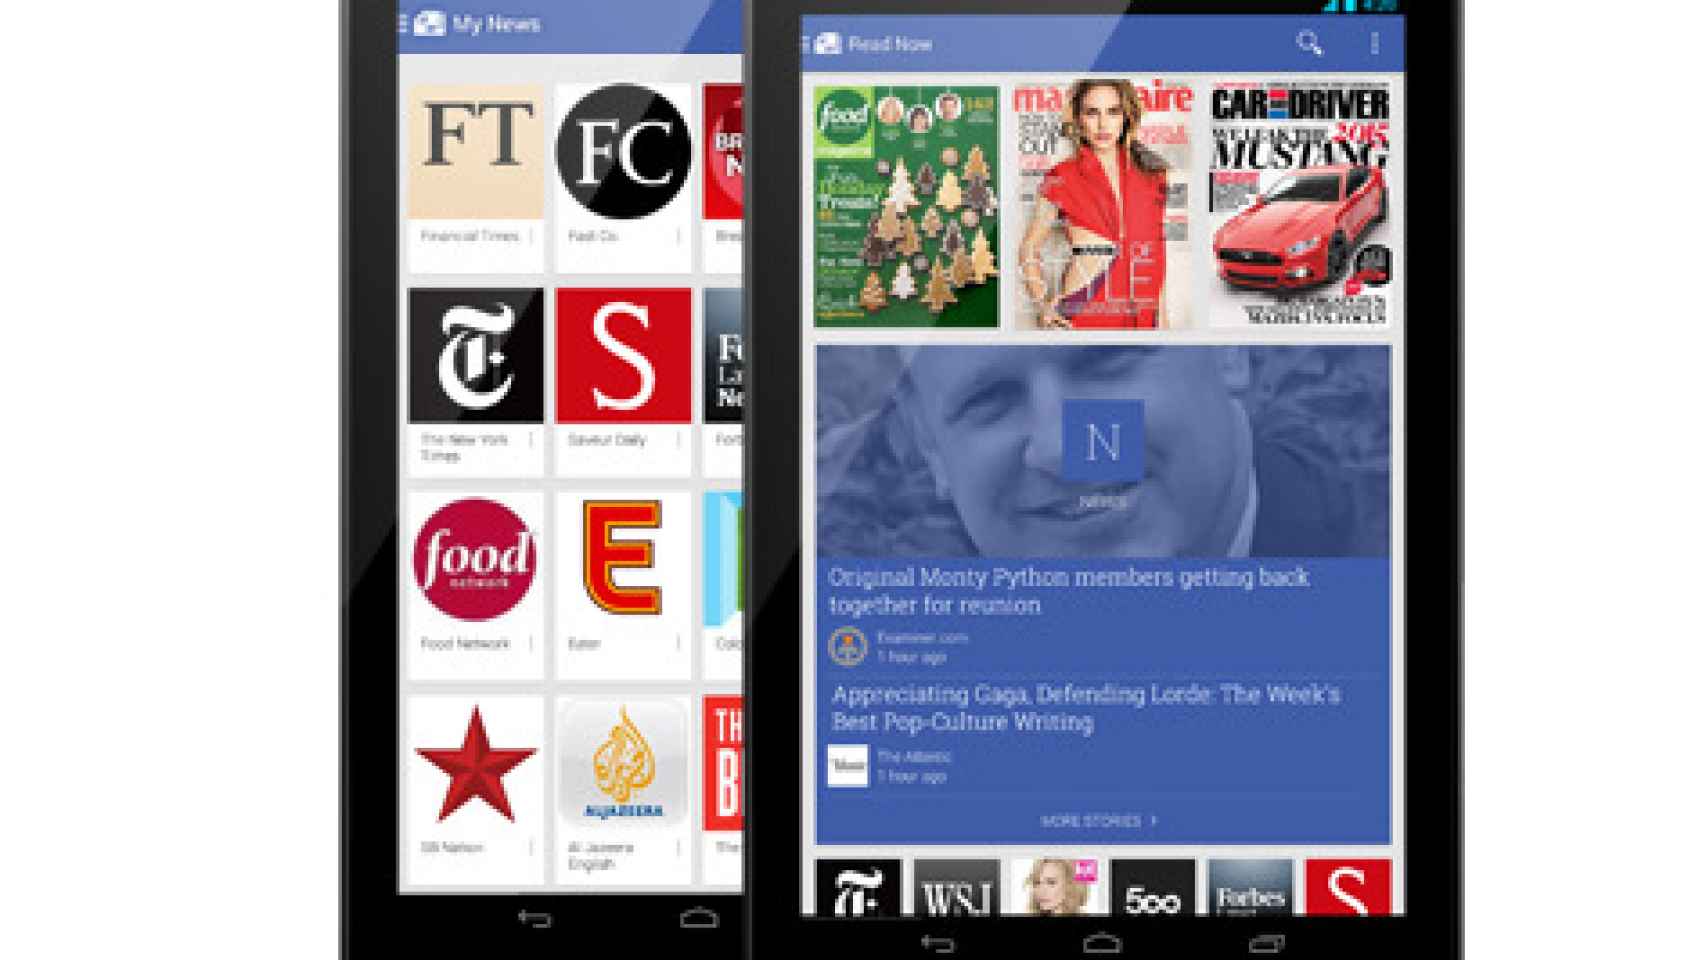 Google presenta Newsstand para Android: La mezcla de Currents y Play Magazines